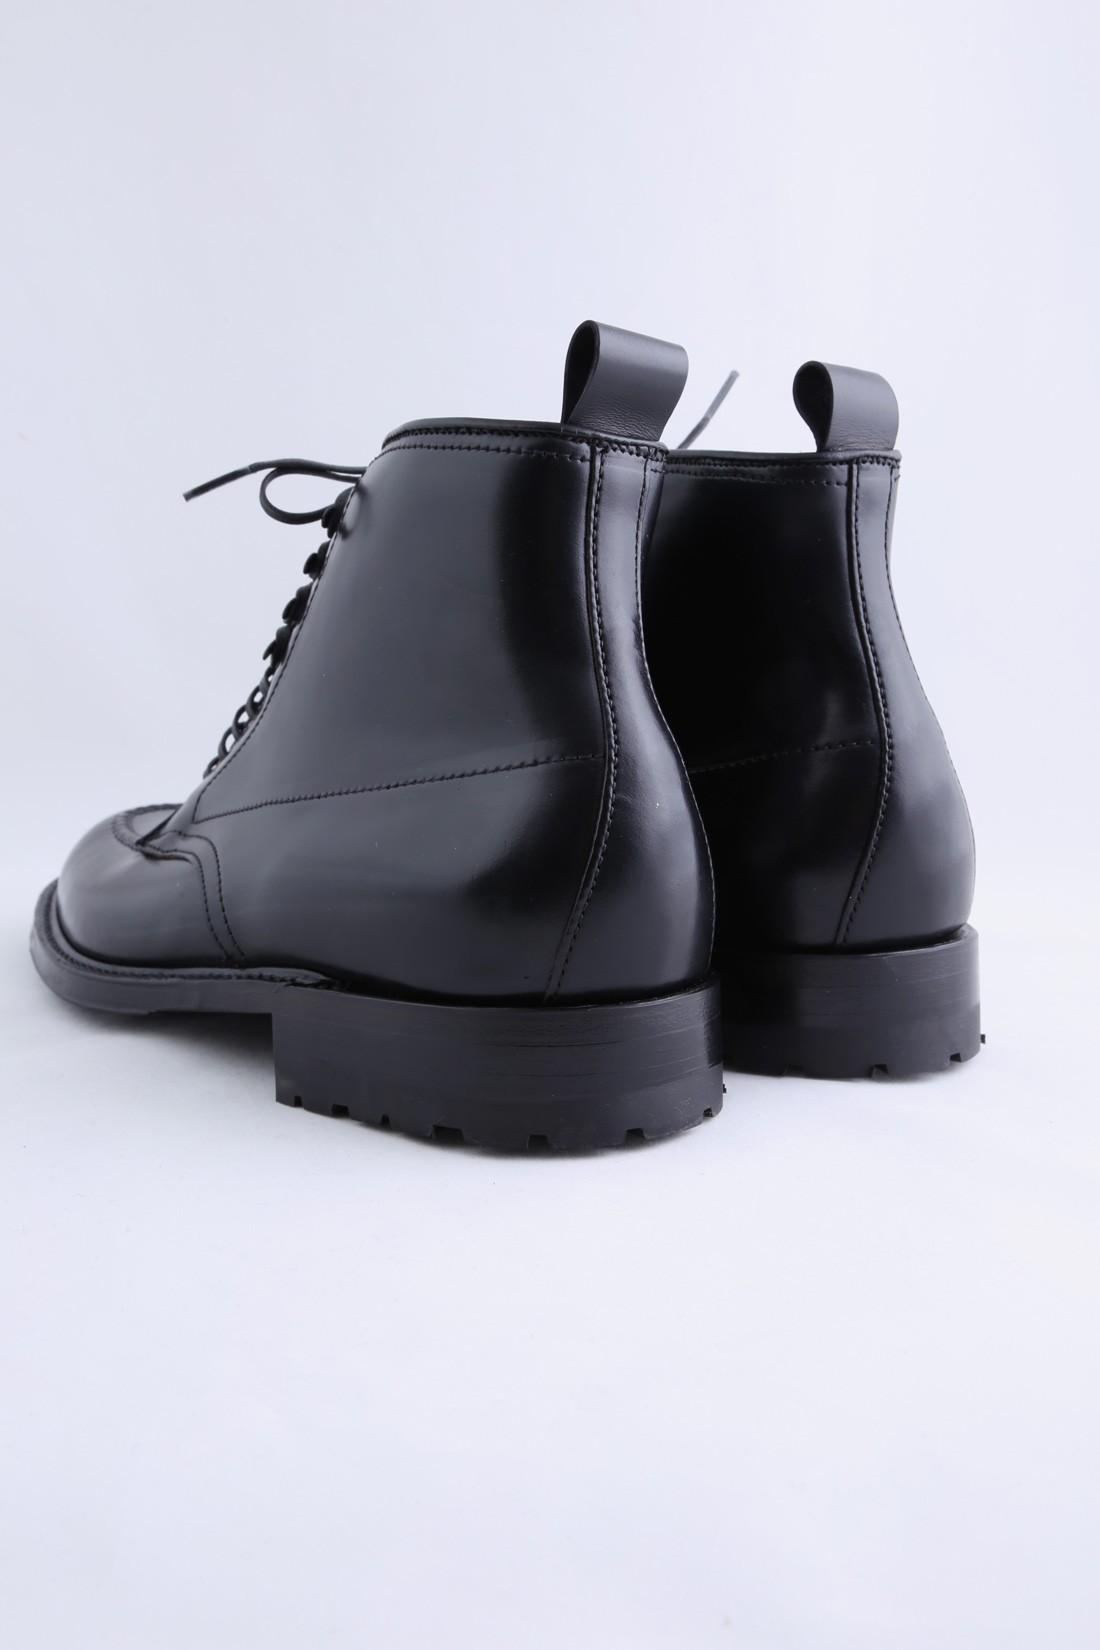 Alden nst cordovan black Hommes Chaussures Bottes & boots Bottines ALDEN CORDOVAN Bottines 